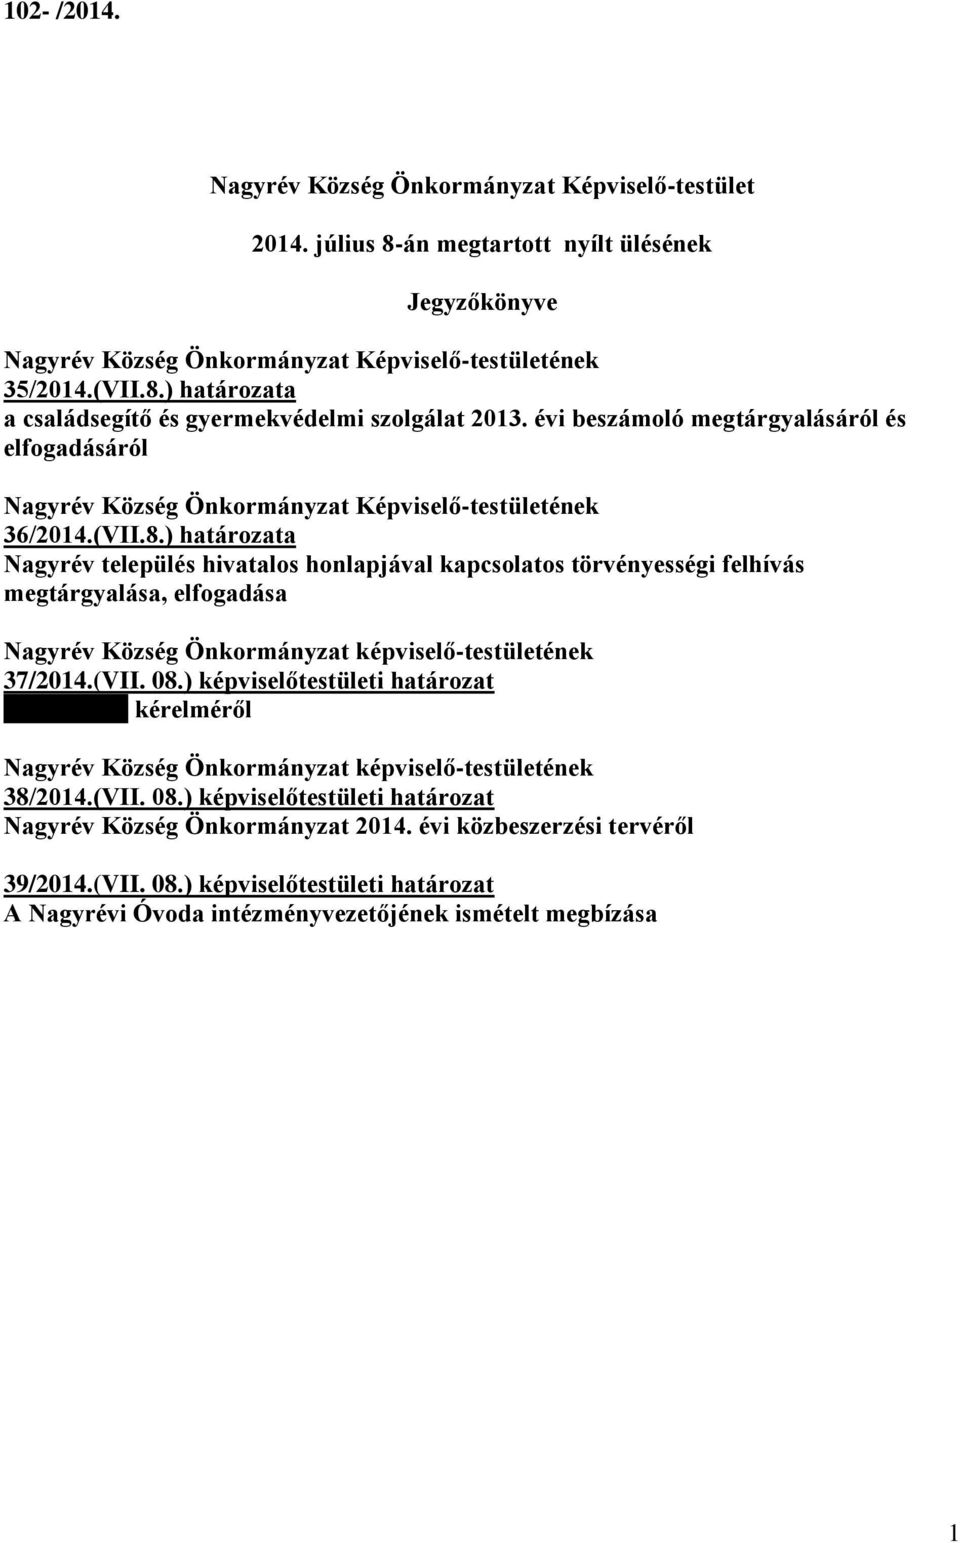 ) határozata Nagyrév település hivatalos honlapjával kapcsolatos törvényességi felhívás megtárgyalása, elfogadása Nagyrév Község Önkormányzat képviselő-testületének 37/2014.(VII. 08.